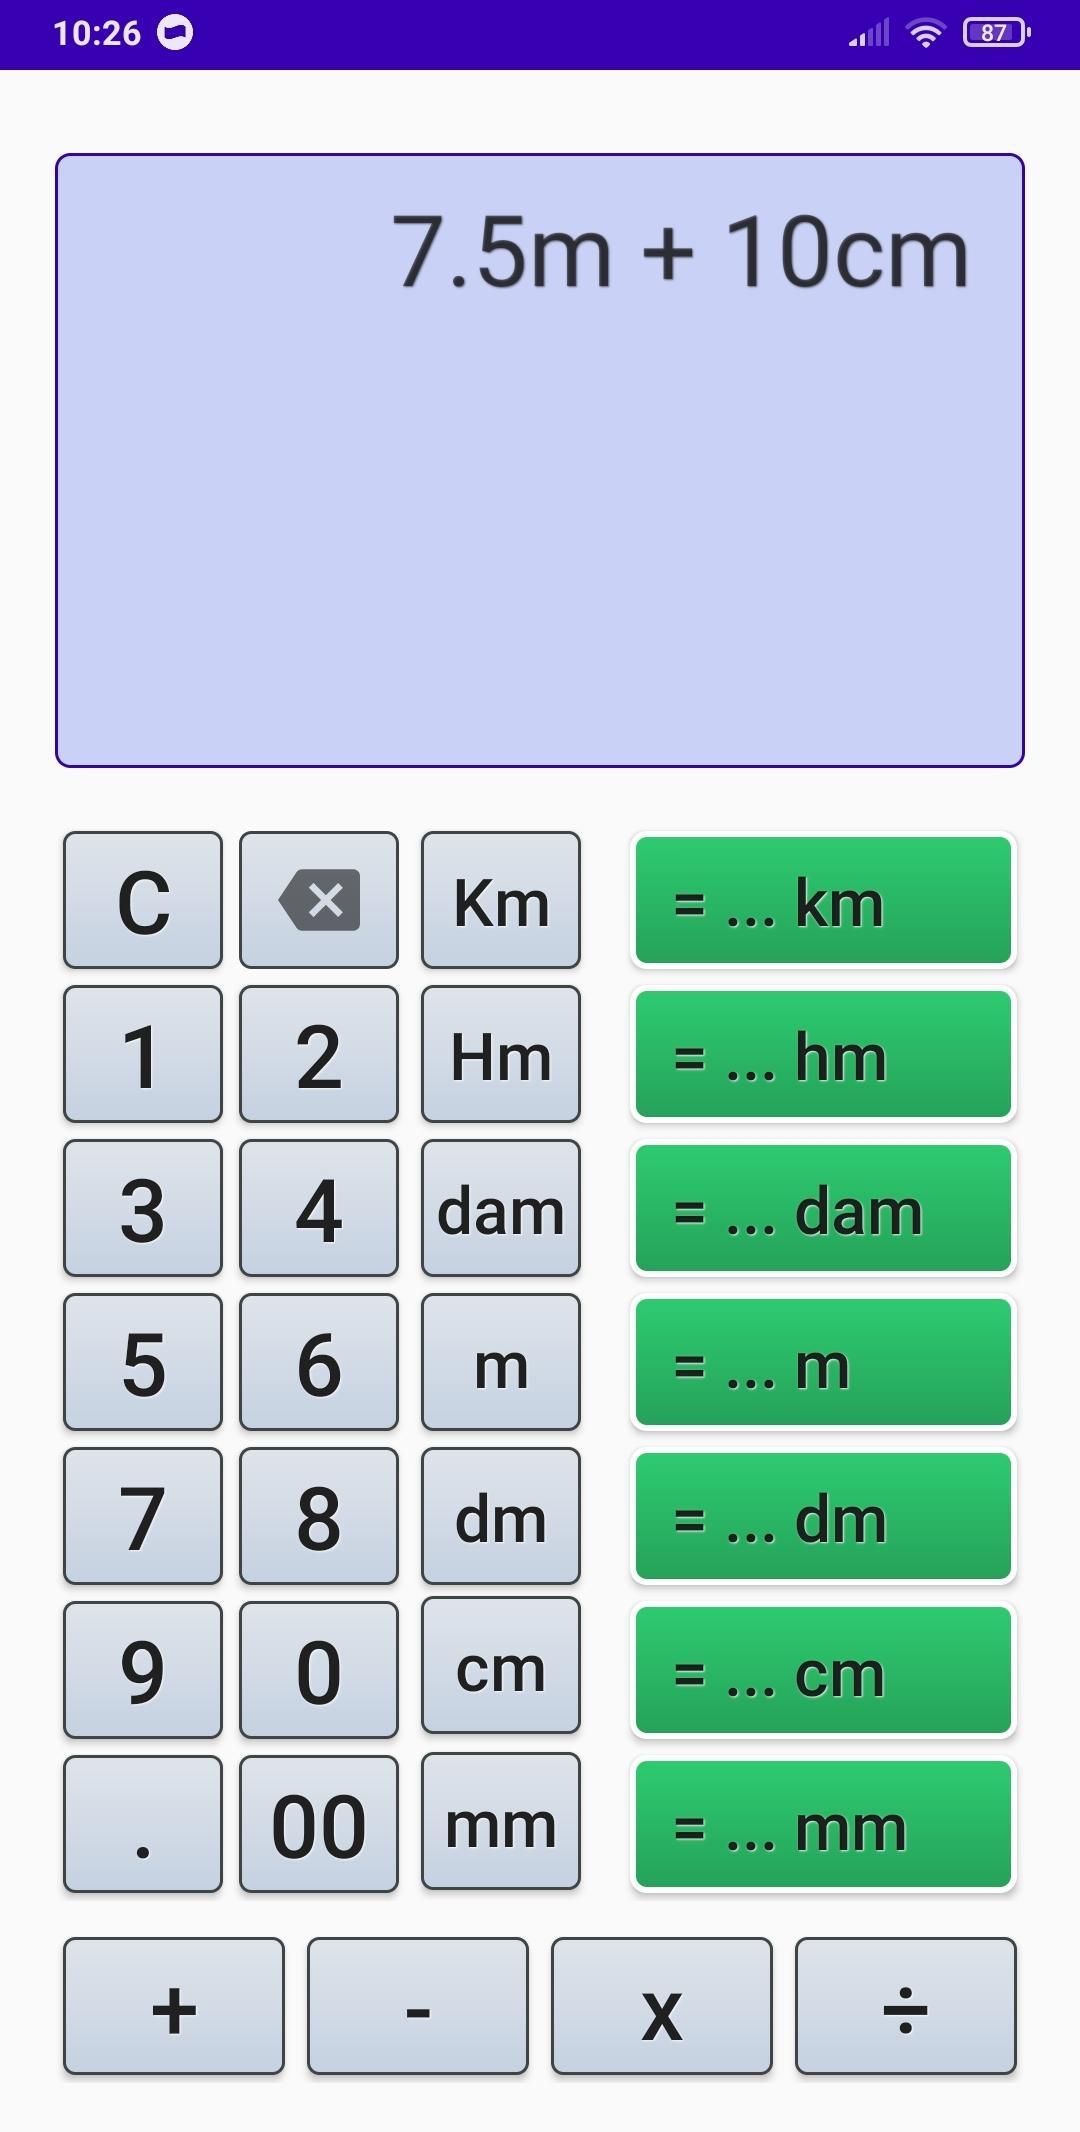 Kalkulator Km Hm Dam M Dm Cm Mm Dengan Caranya For Android Apk Download